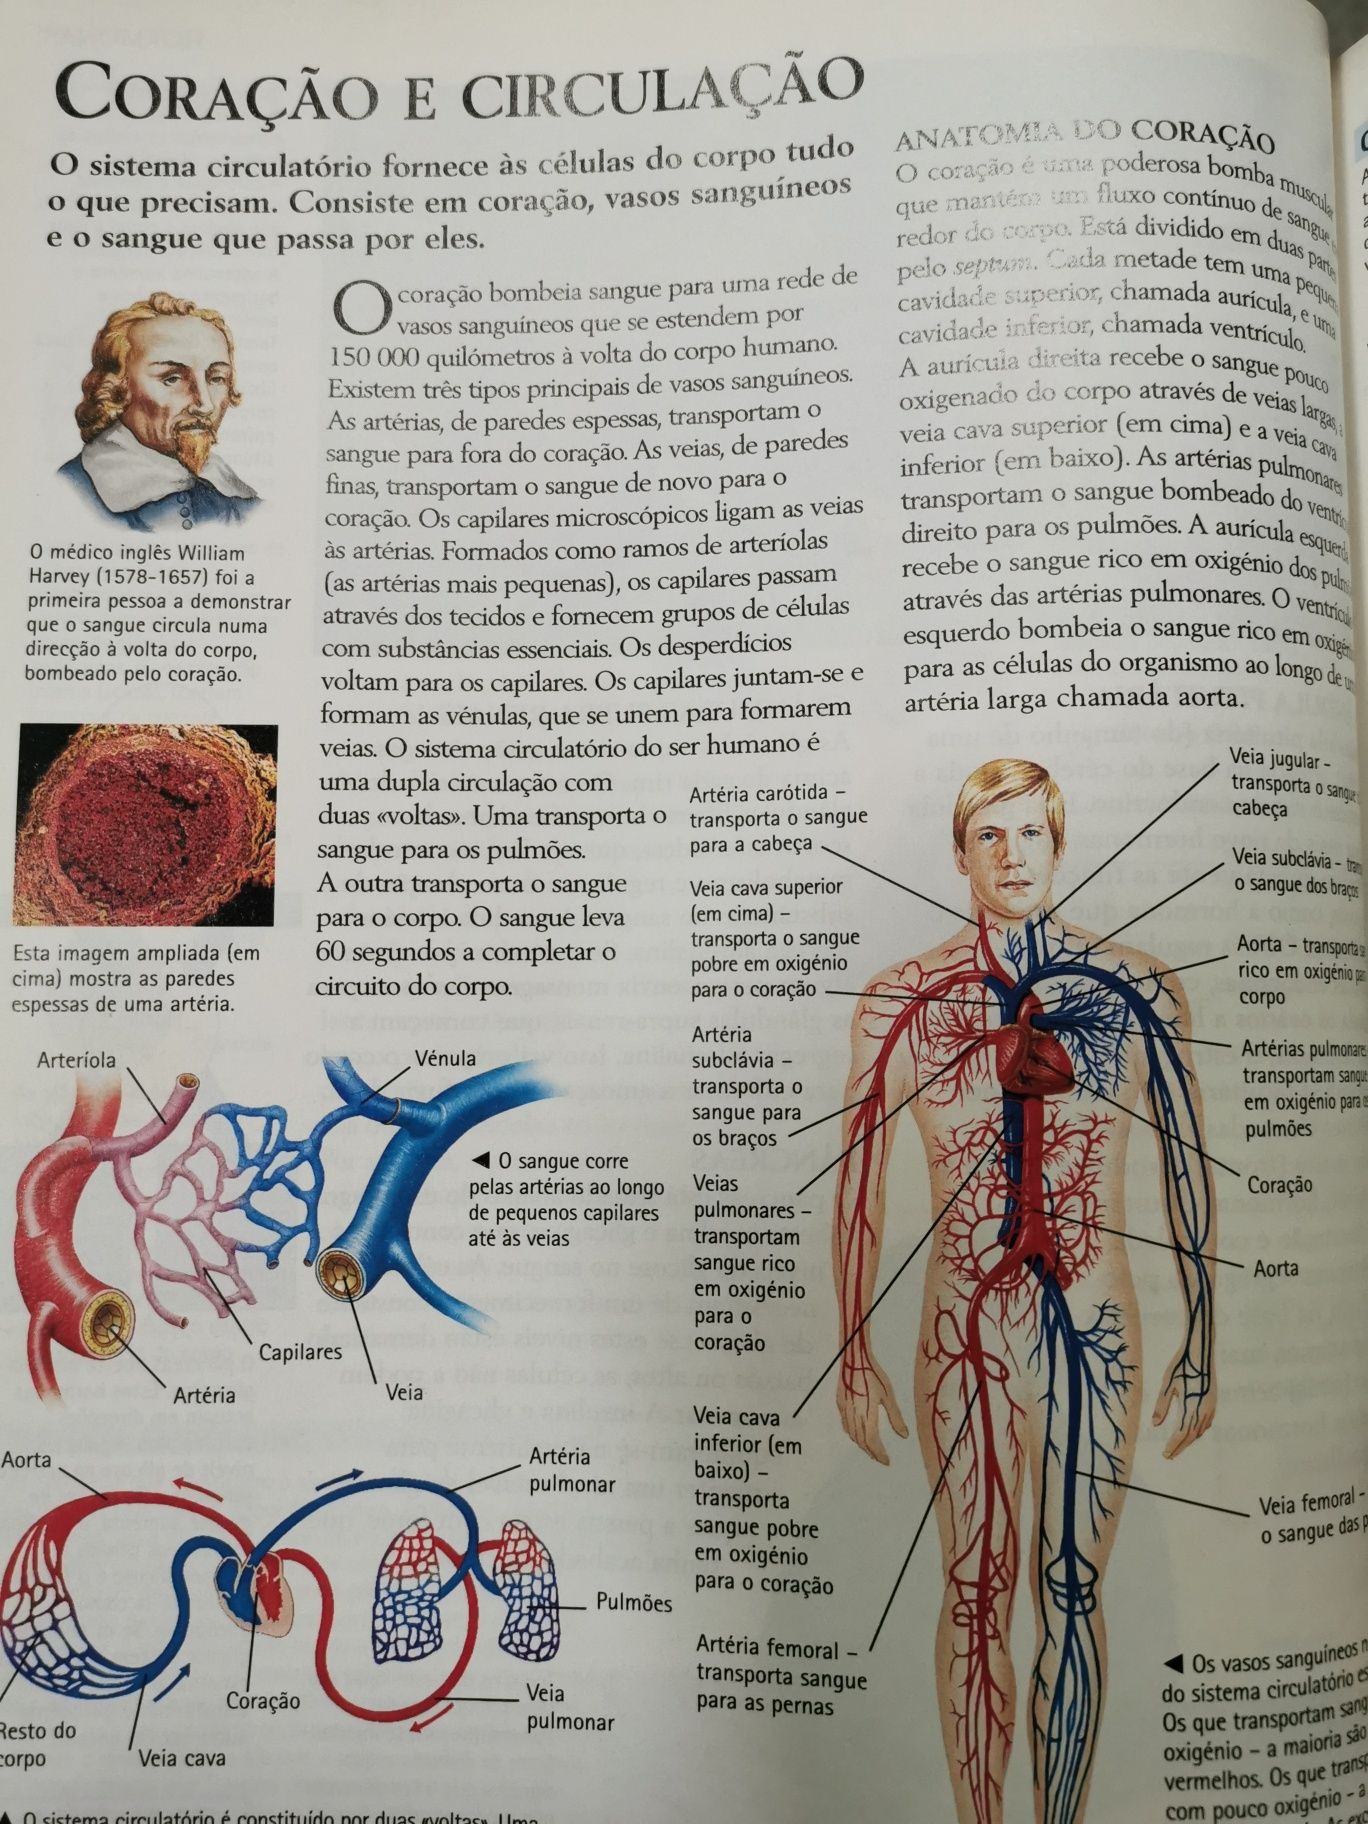 Enciclopédia Ilustrada da Ciência